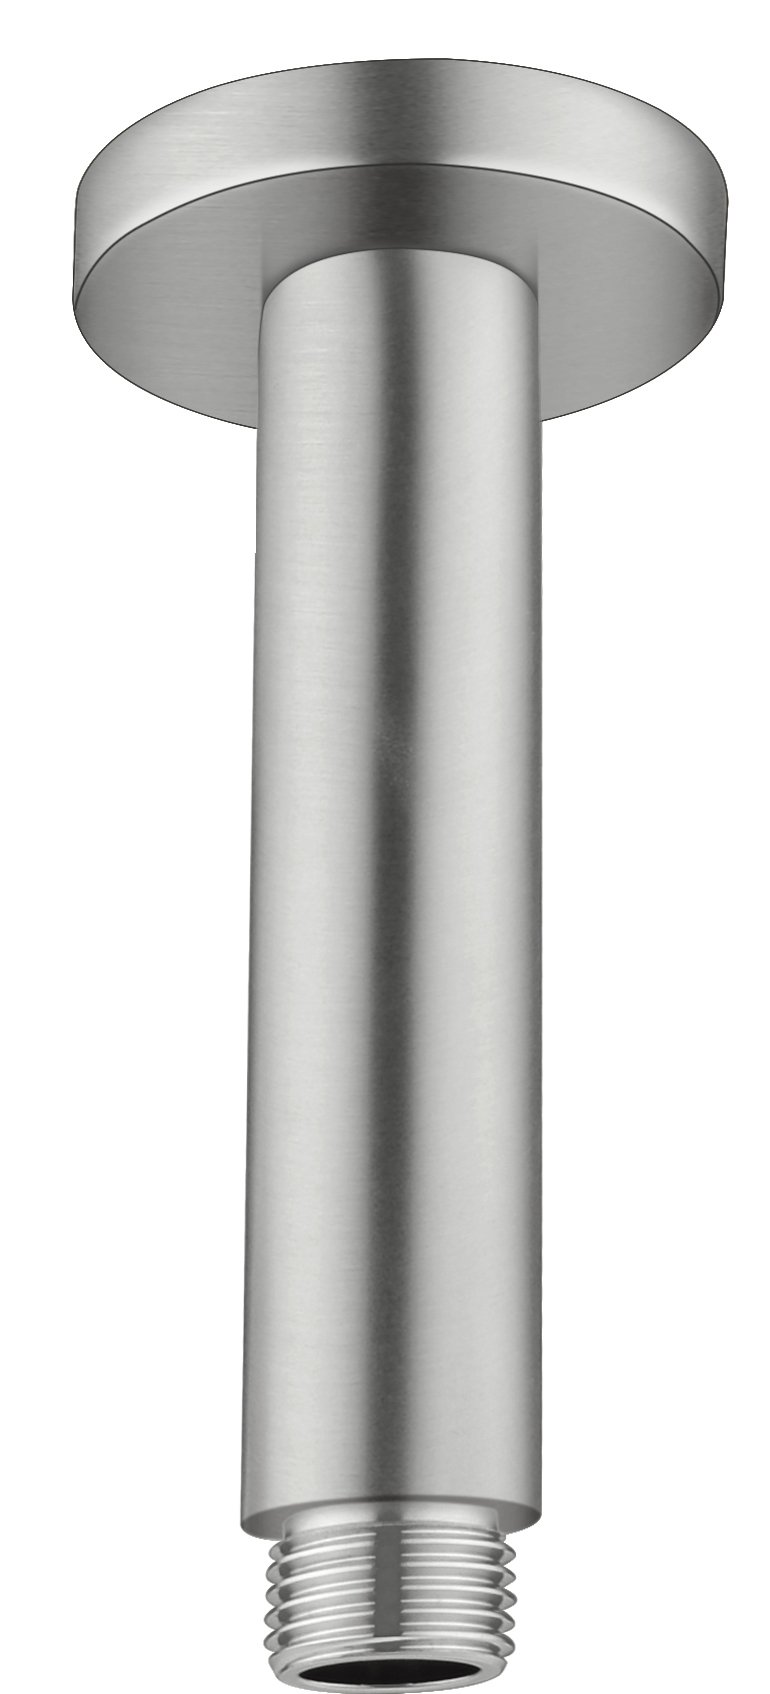 NERO VITRA ROUND CEILING ARM BRUSHED NICKEL Product Image 1